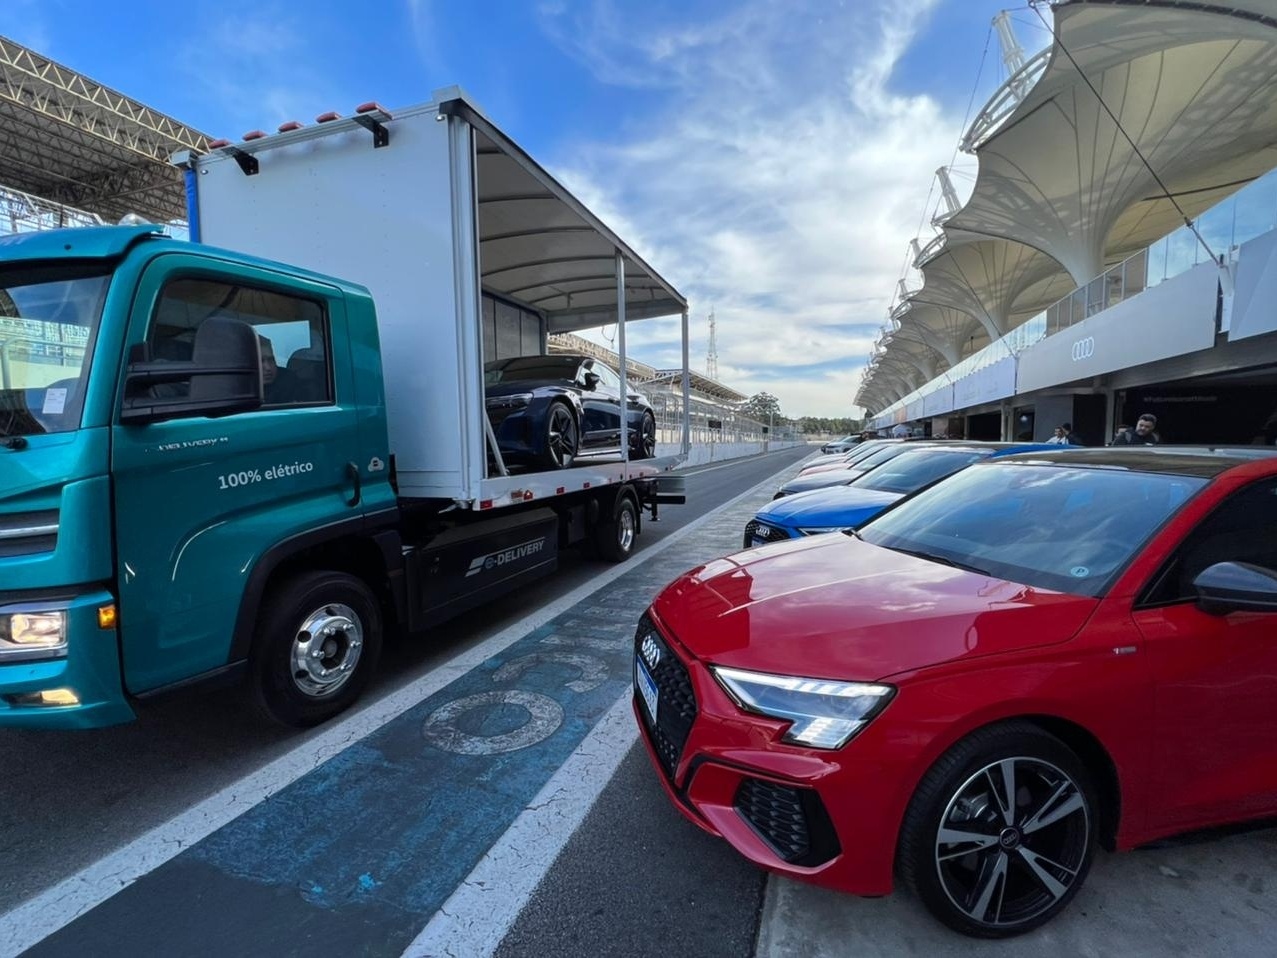 Festival Interlagos Carros 2023 acontece em SP com test-drive e lançamentos